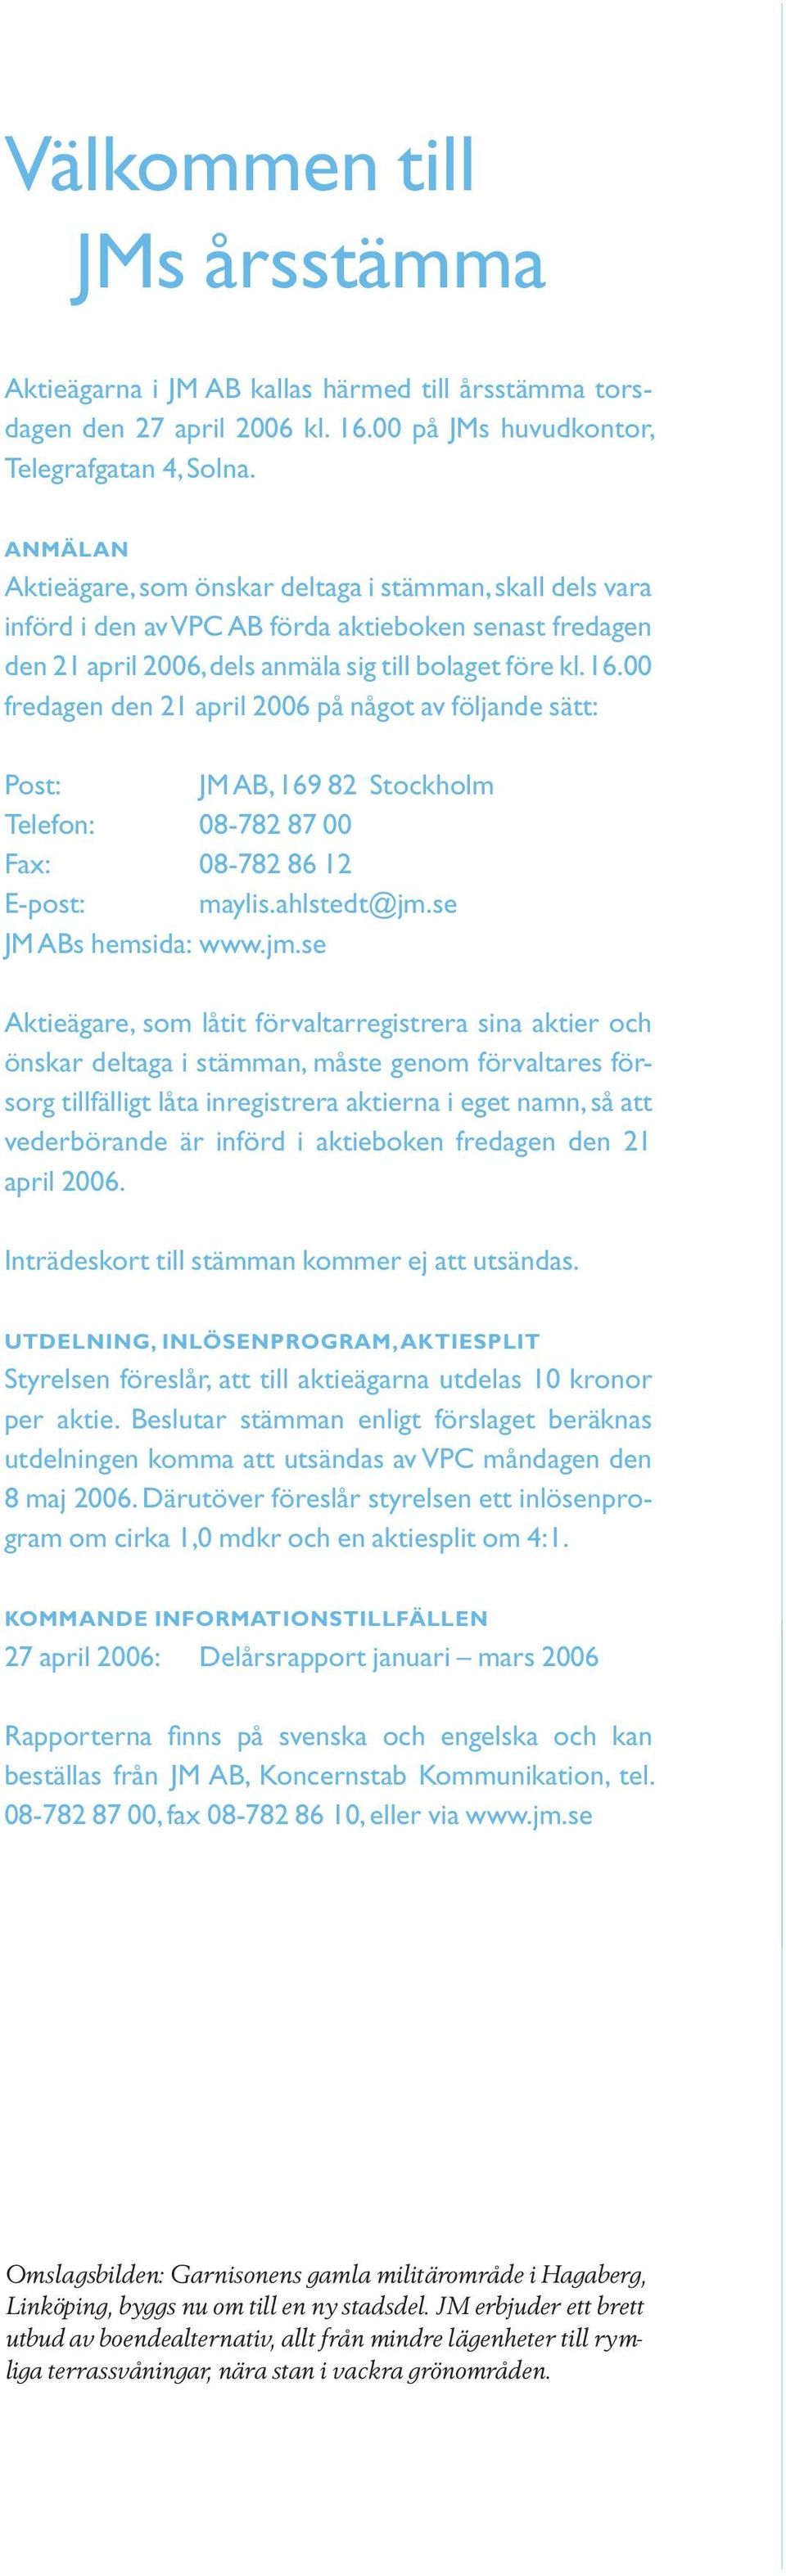 00 fredagen den 21 april 2006 på något av följande sätt: Post: JM AB, 169 82 Stockholm Telefon: 08-782 87 00 Fax: 08-782 86 12 E-post: maylis.ahlstedt@jm.